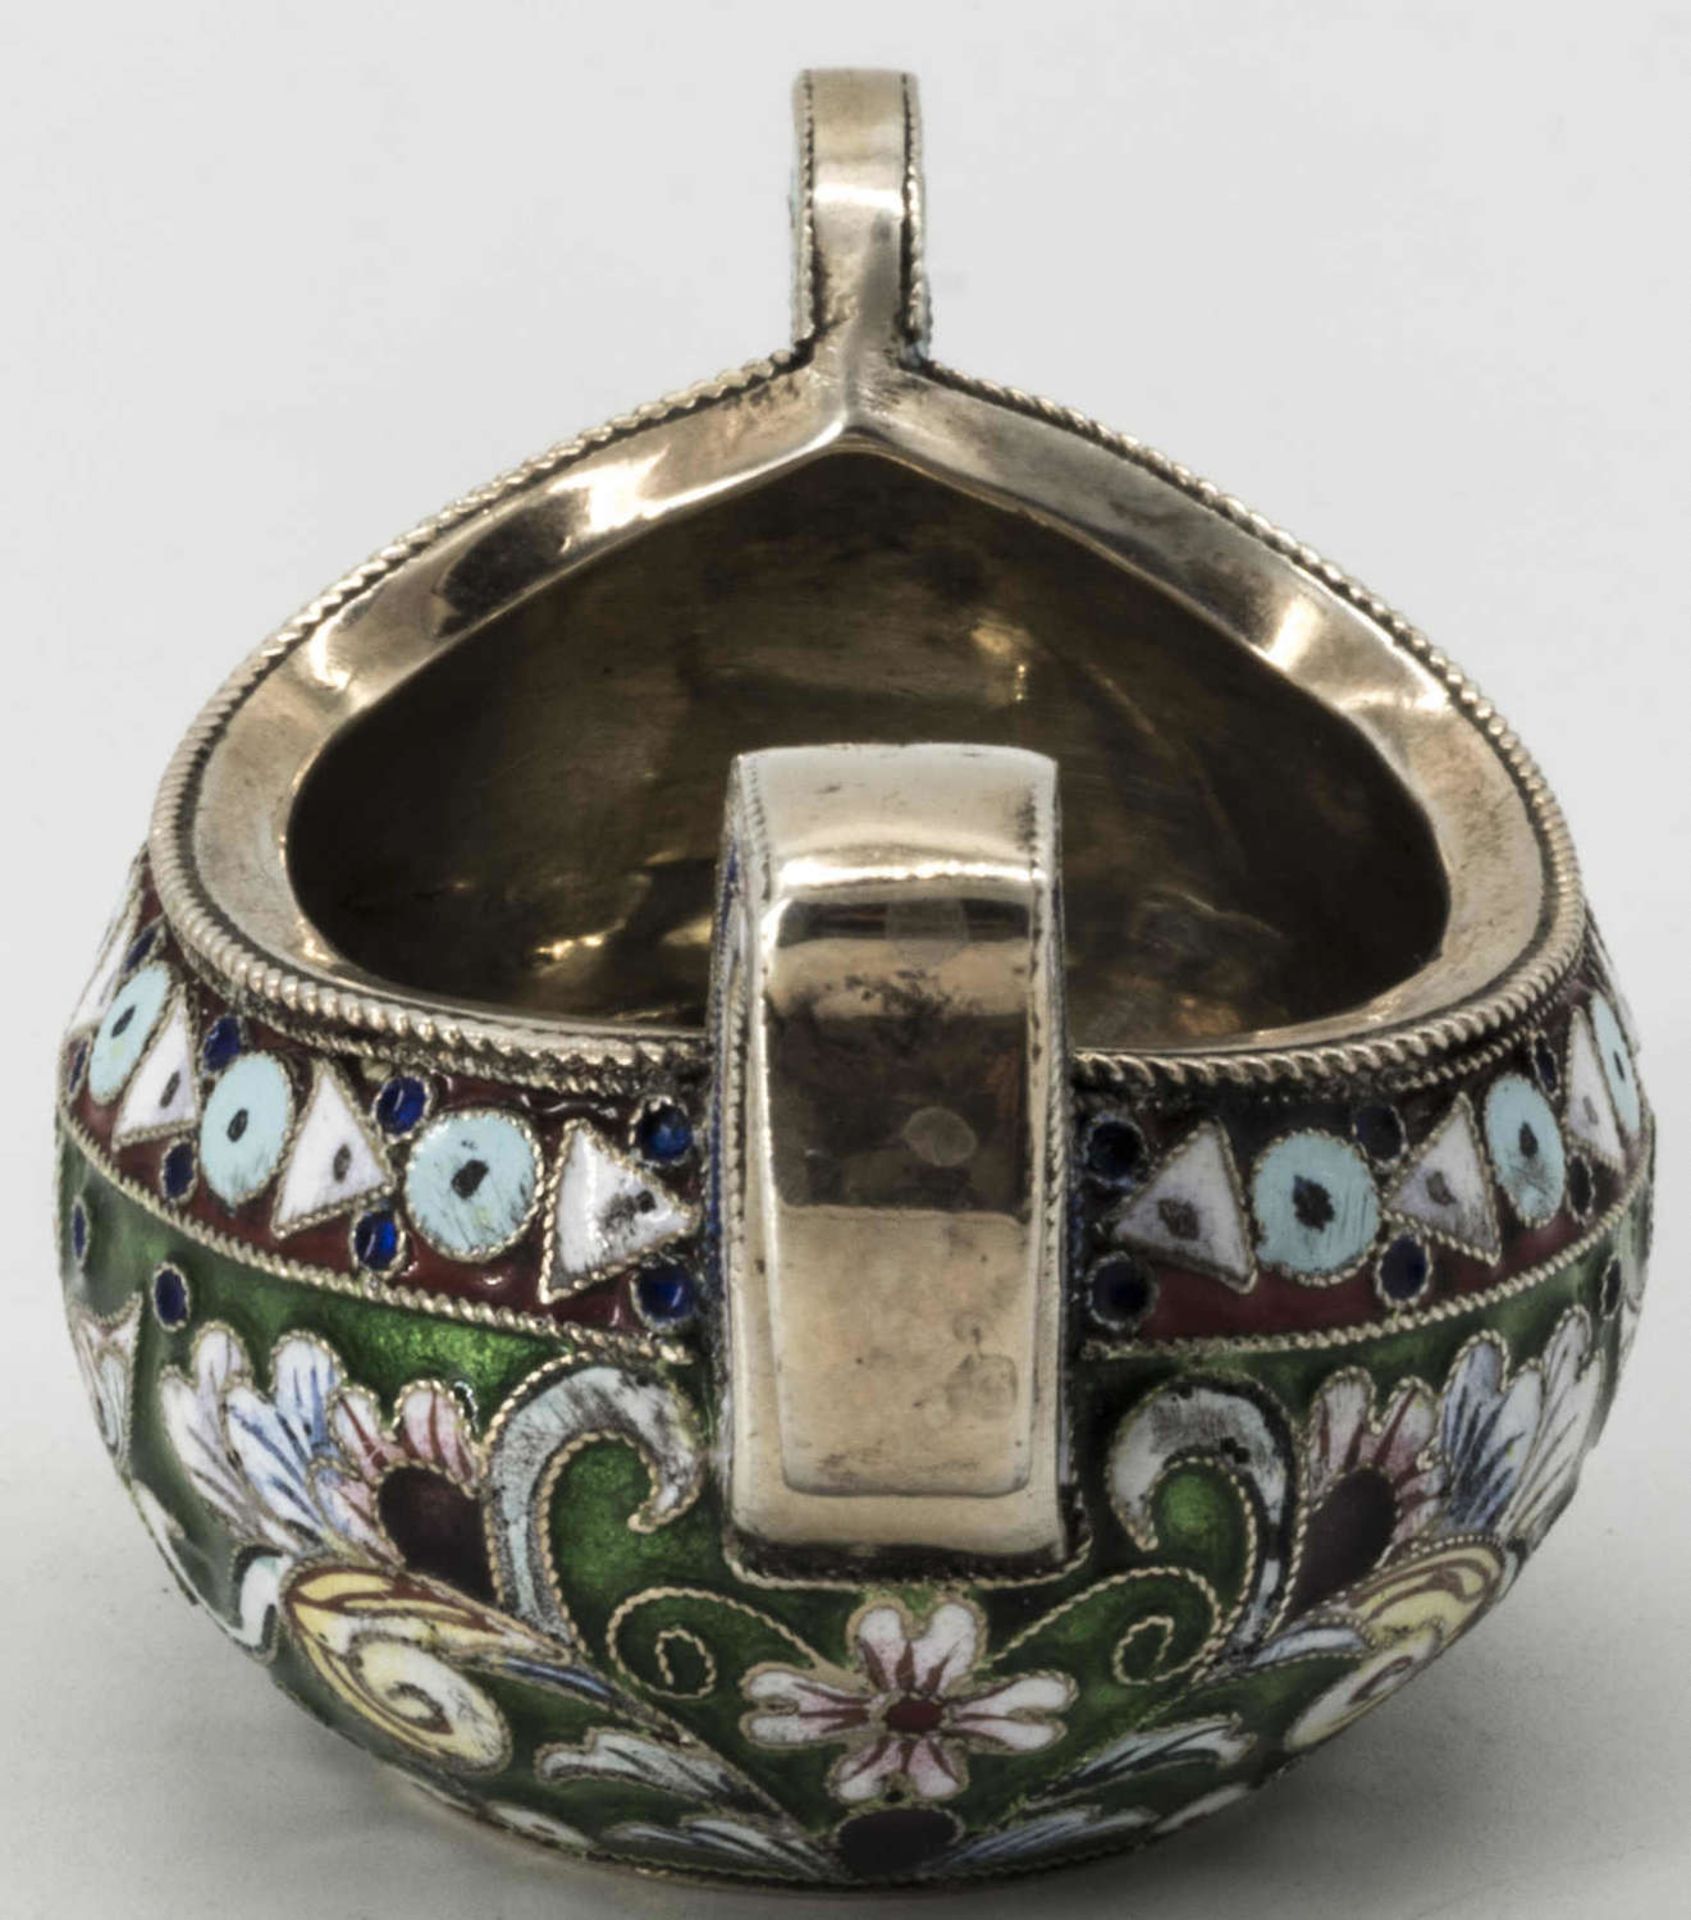 Russischer Cloisonné Kowsch, (1899 - 1908), Silber, oval, verschiedenfarbig floral ornamental - Image 4 of 6